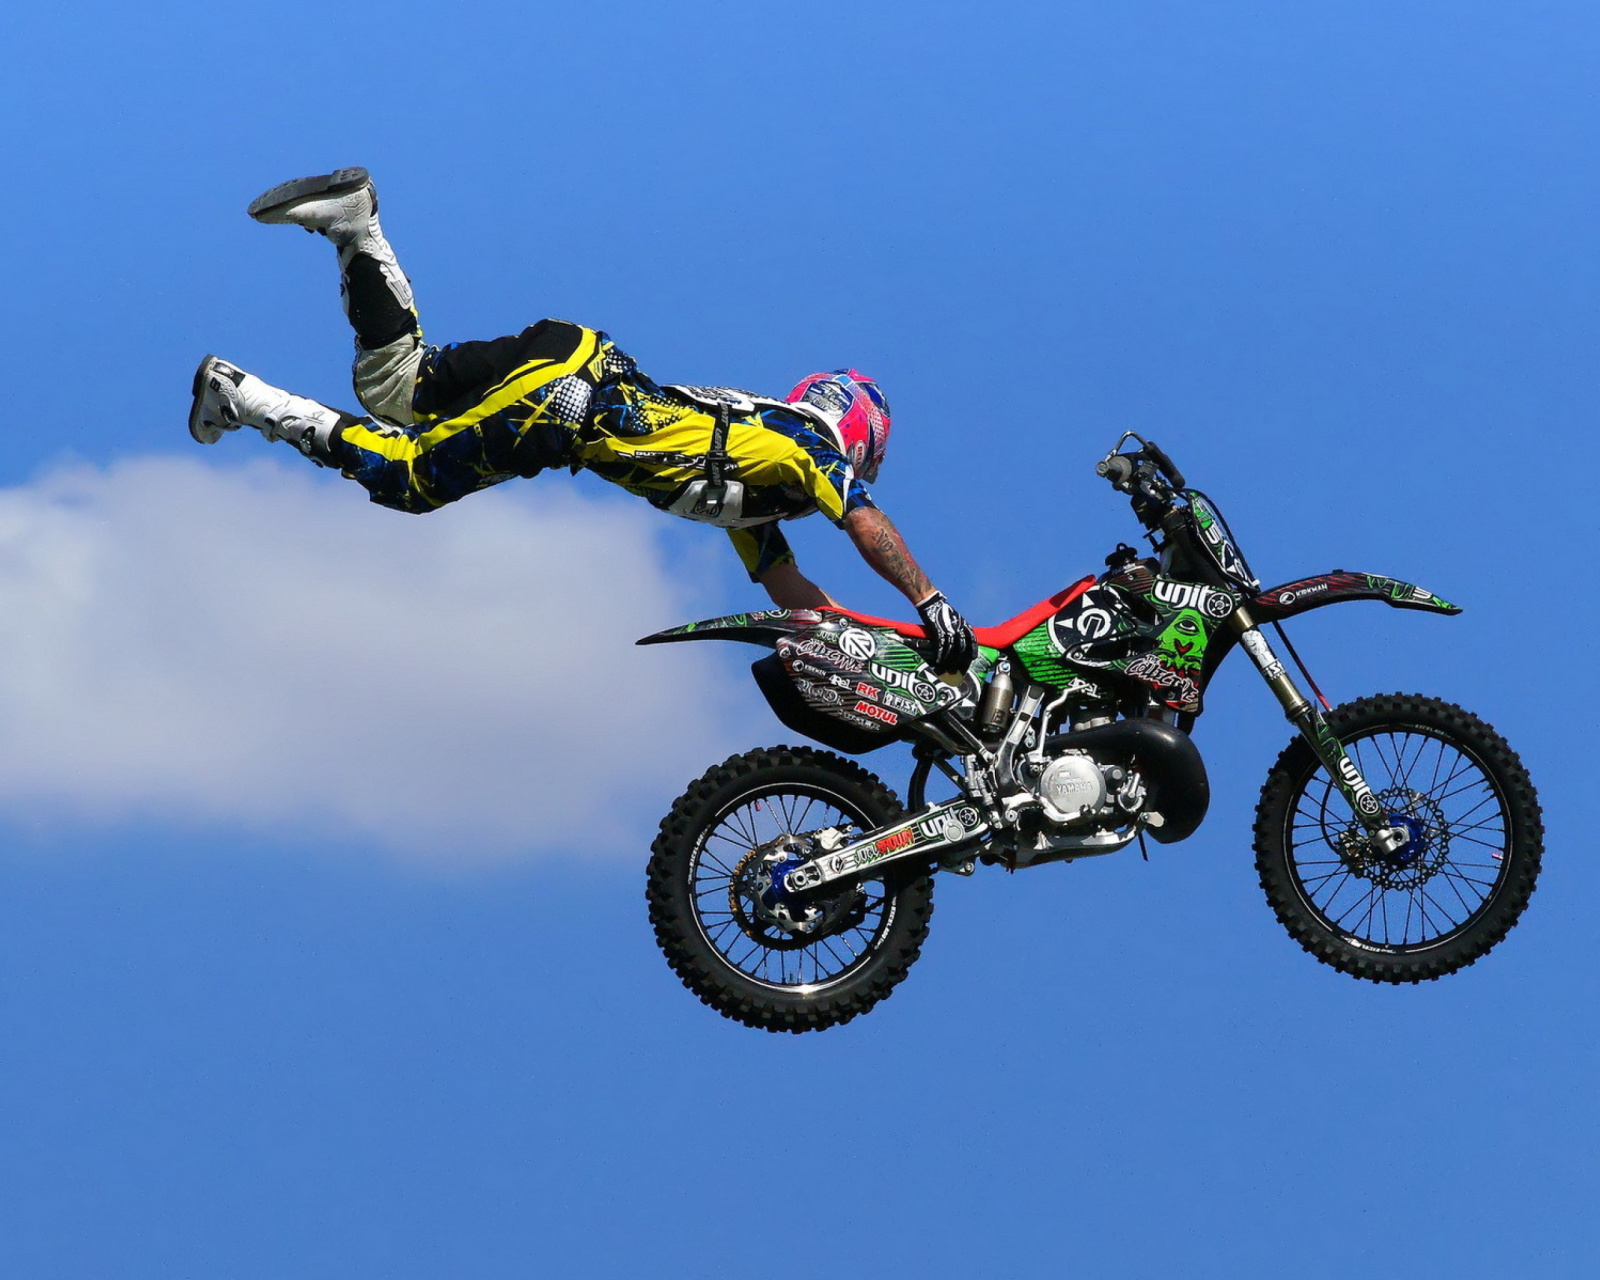 Das Motorcyclist Ride Jump Wallpaper 1600x1280